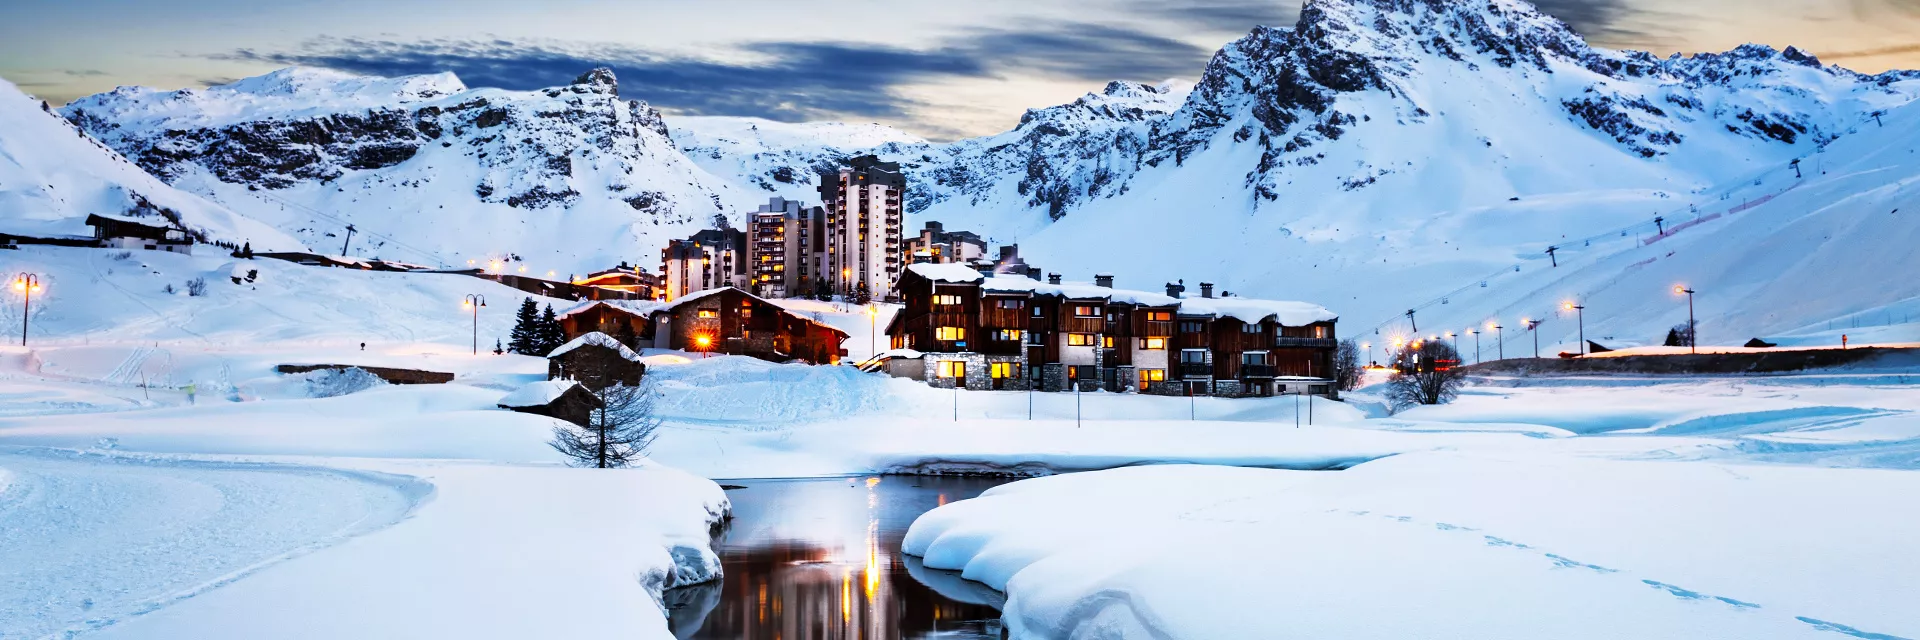 Location vacances Alpes du Nord hiver